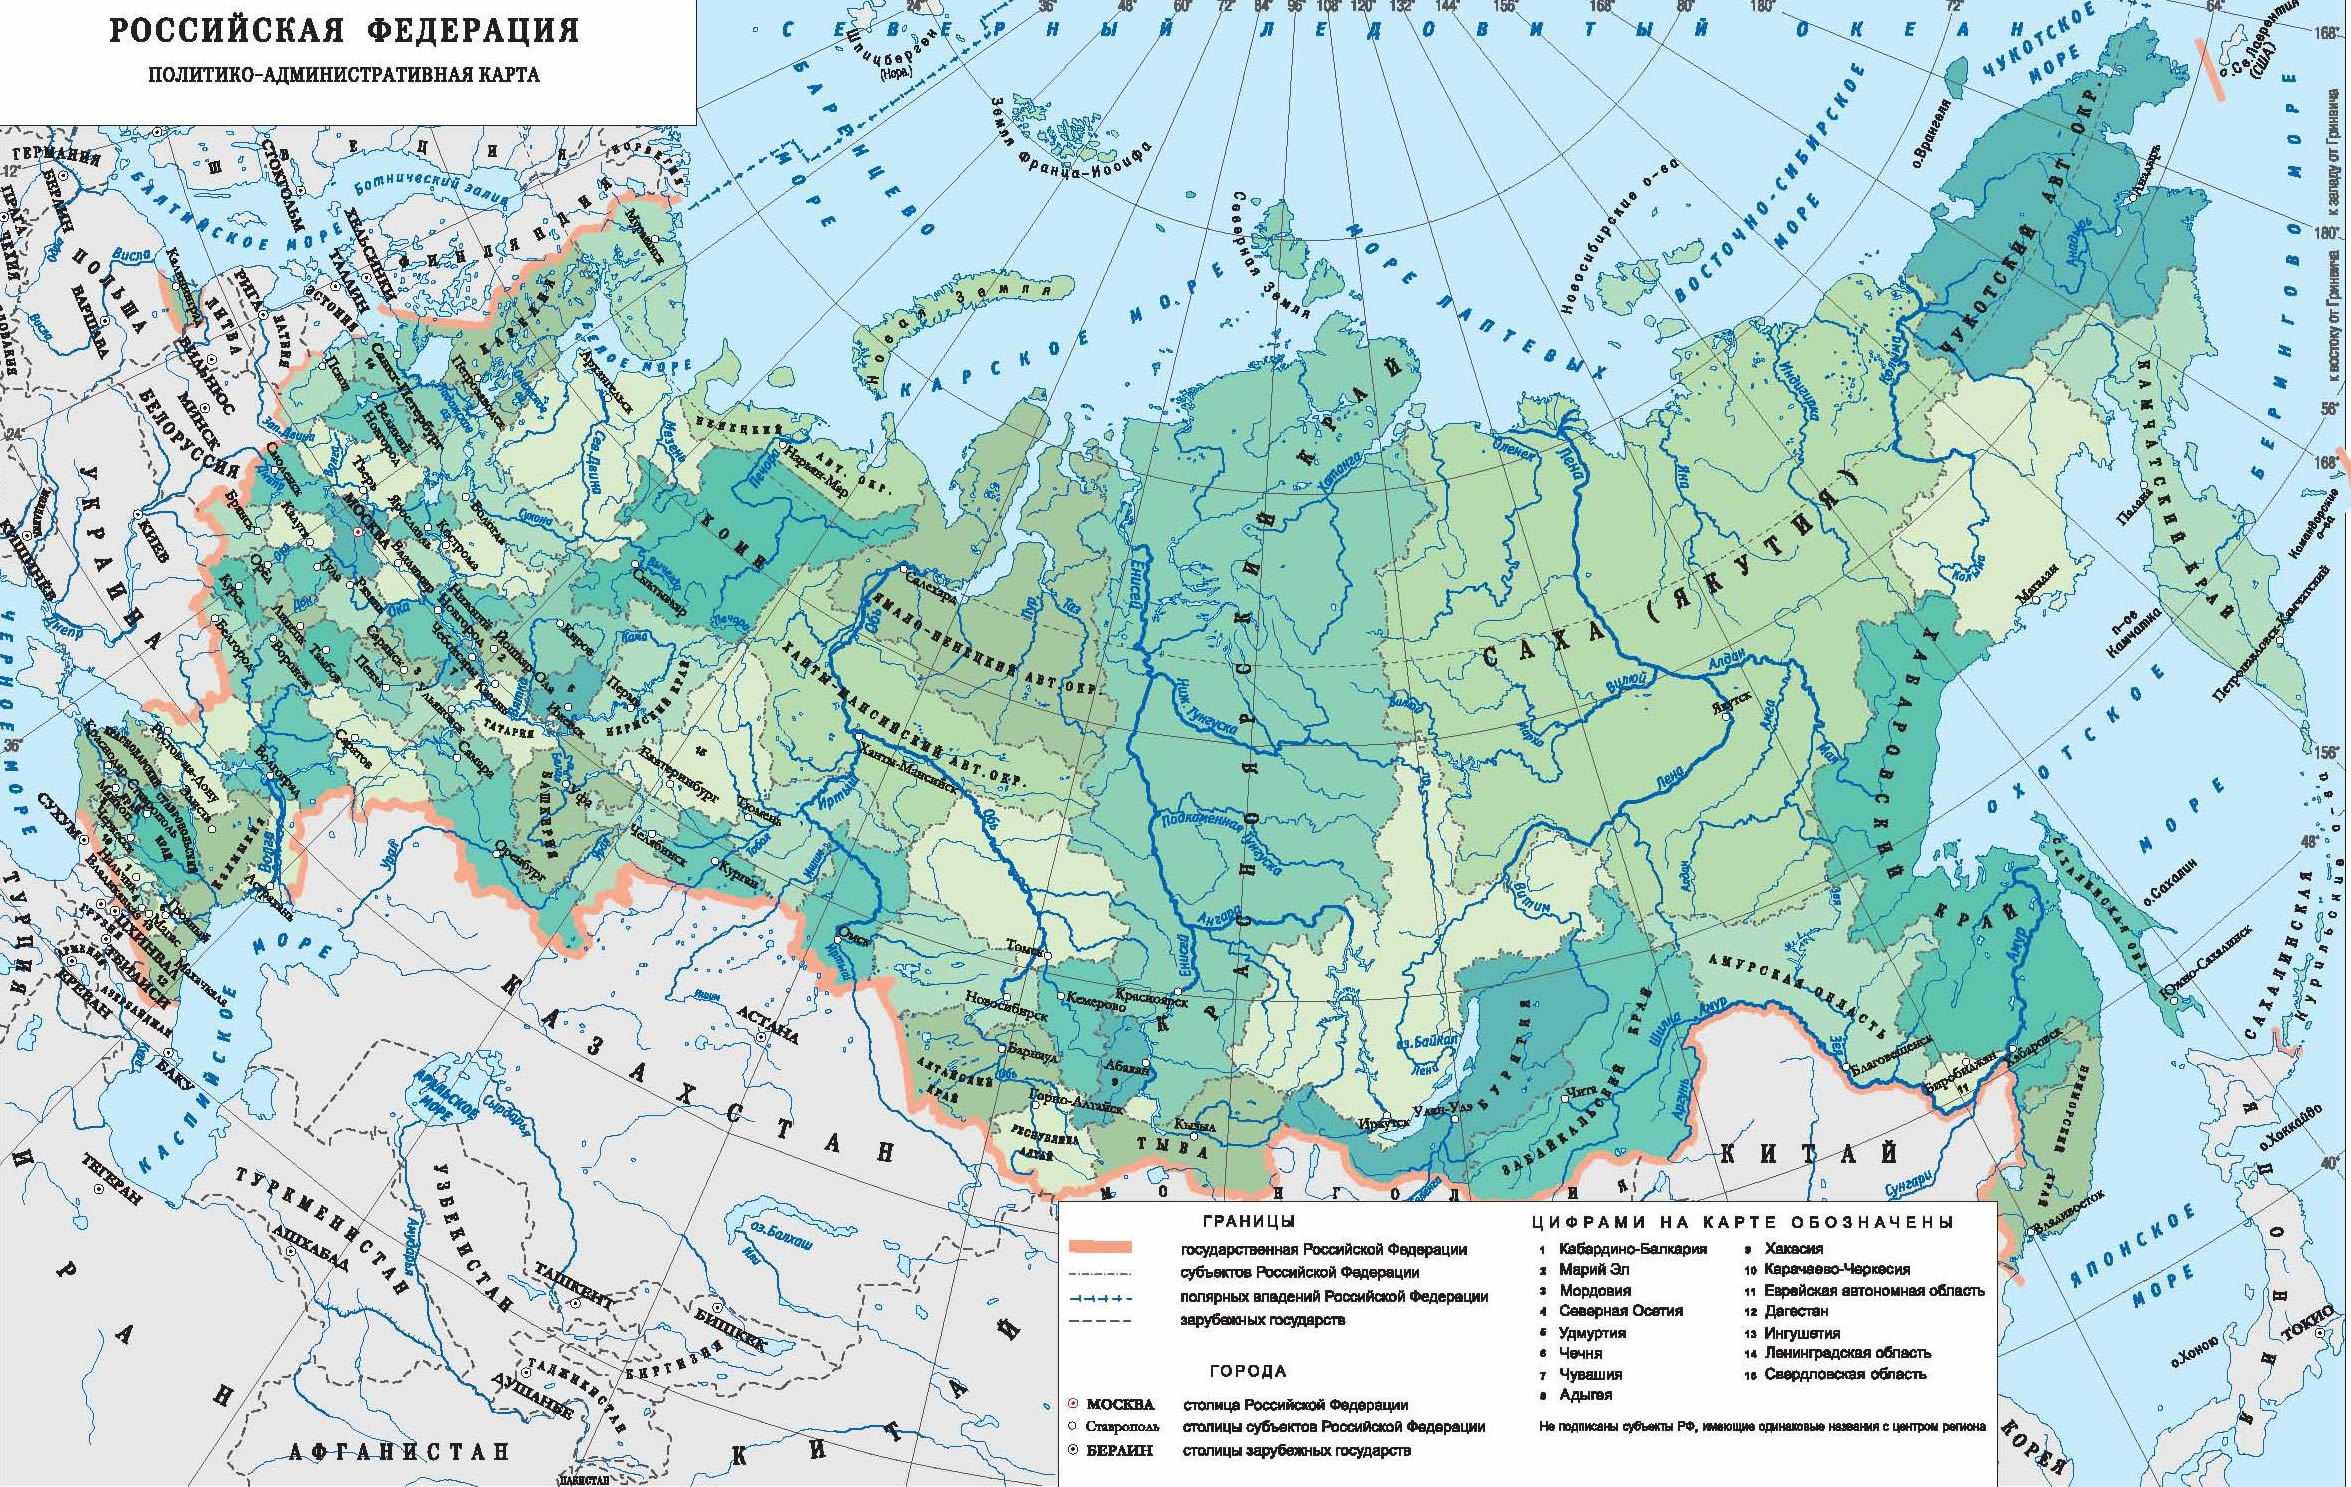 40 крупнейших рек россии